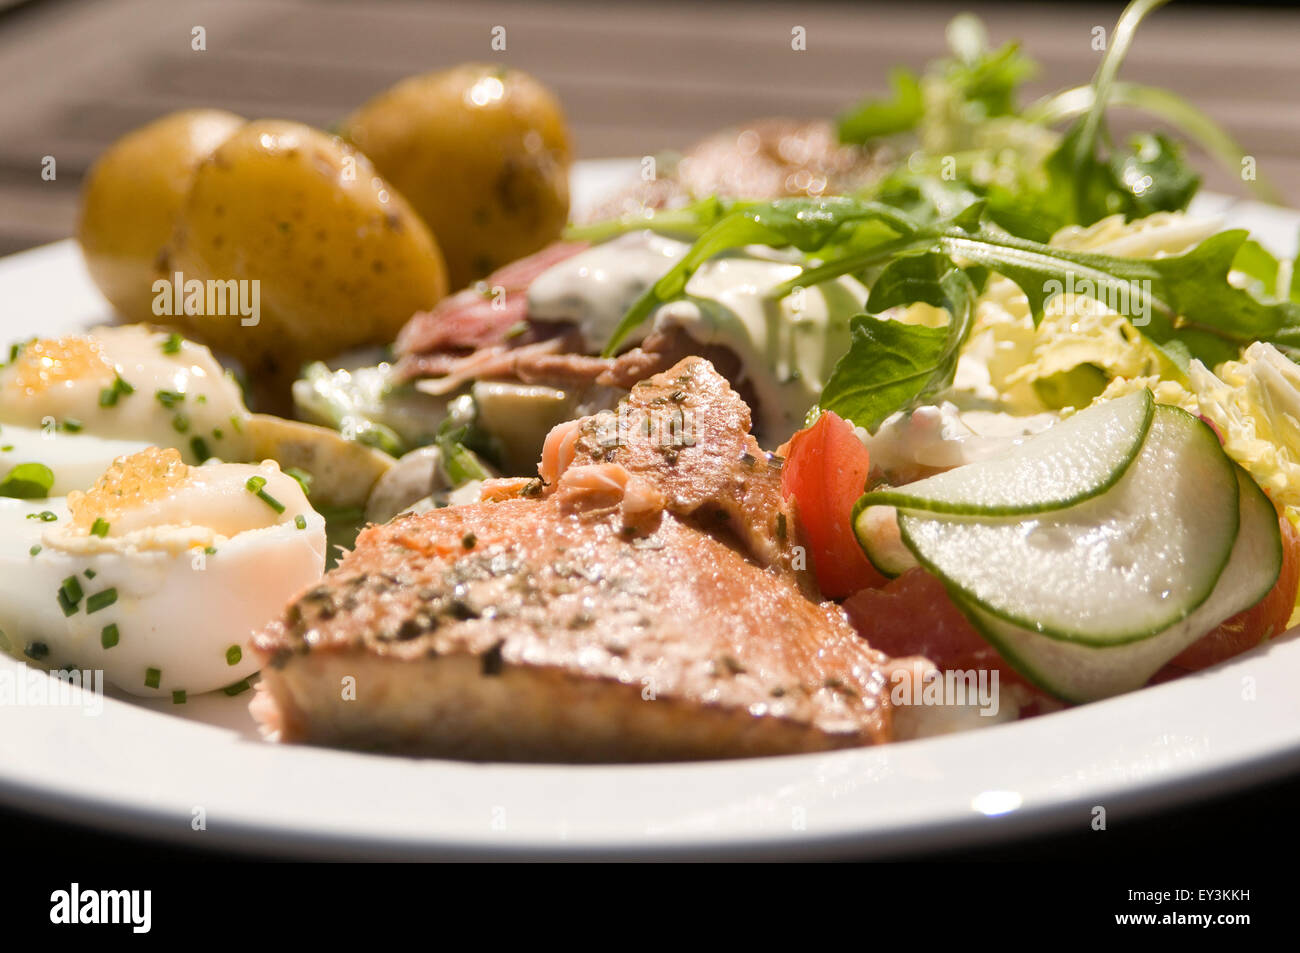 Skandinavische Diät schwedische Schweden Essen Mahlzeit Diäten Rauch Fischöl Lachs gekochtes Ei Eiern Kartoffeln frische gesunde Lebensmittel super Öle s Stockfoto